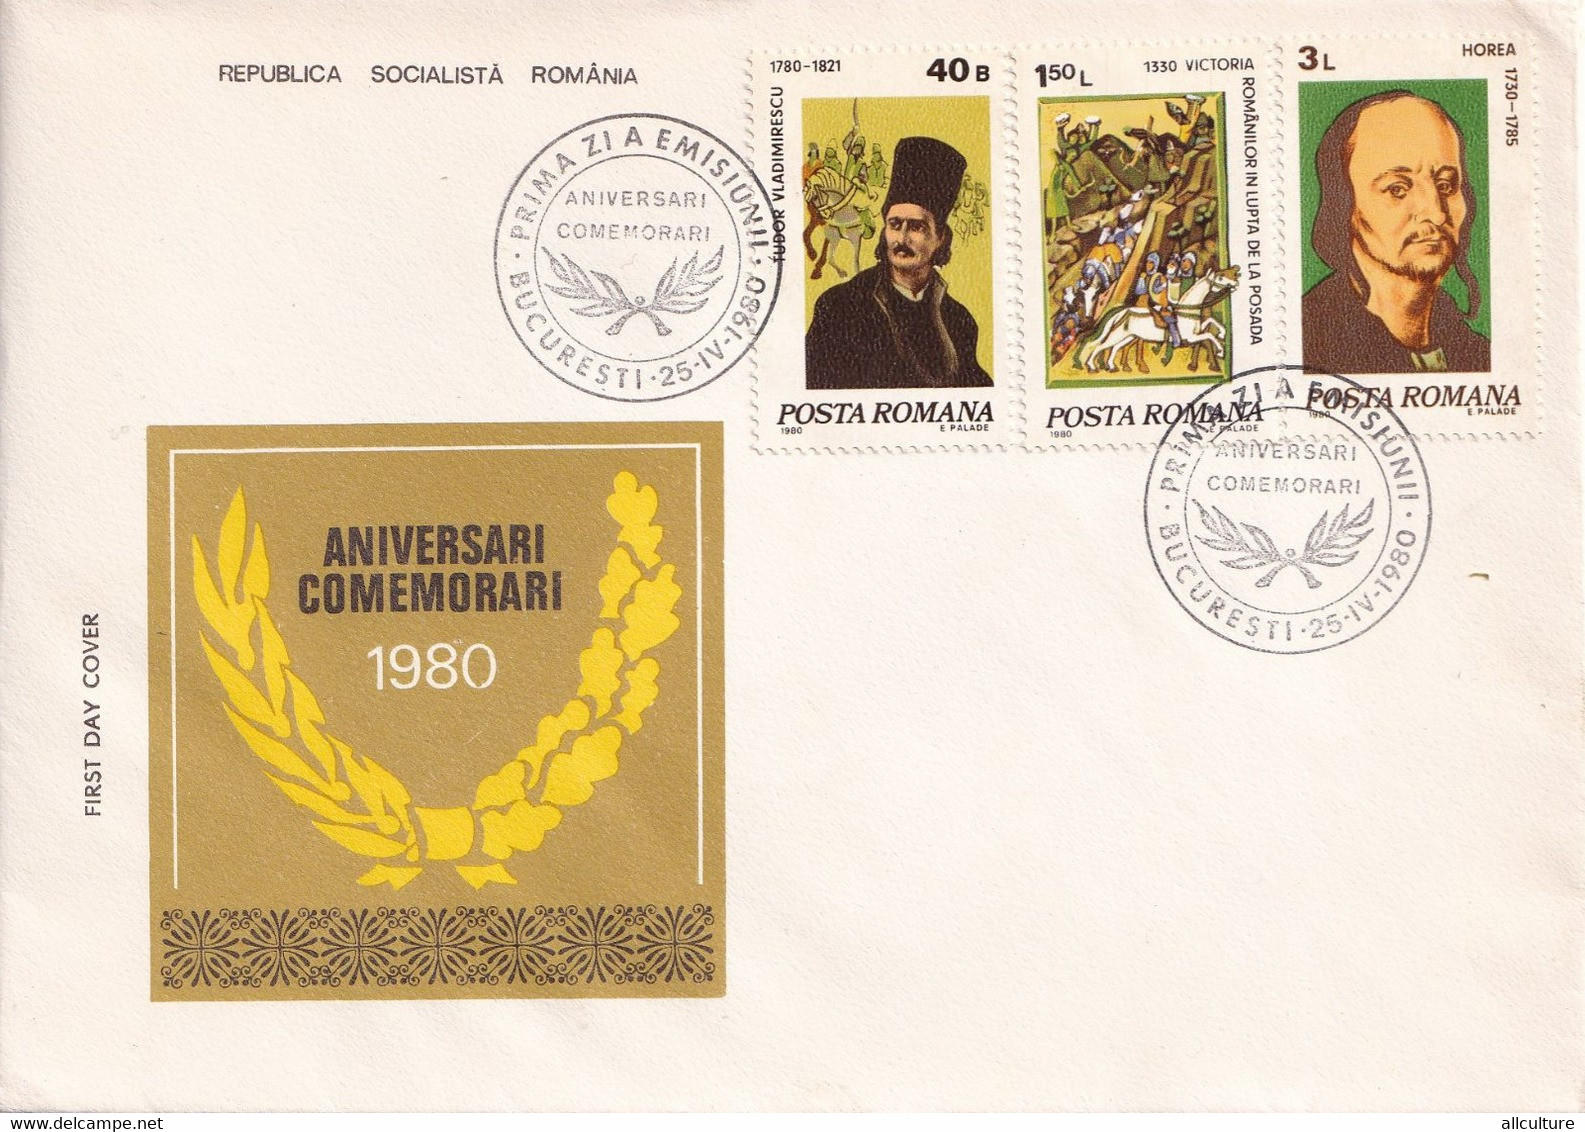 A2761-  Aniversari Si Comemorari , Republica Socialista Romania, Prima Zi De Emisiune Bucuresti 1980 2 Covers   FDC - FDC